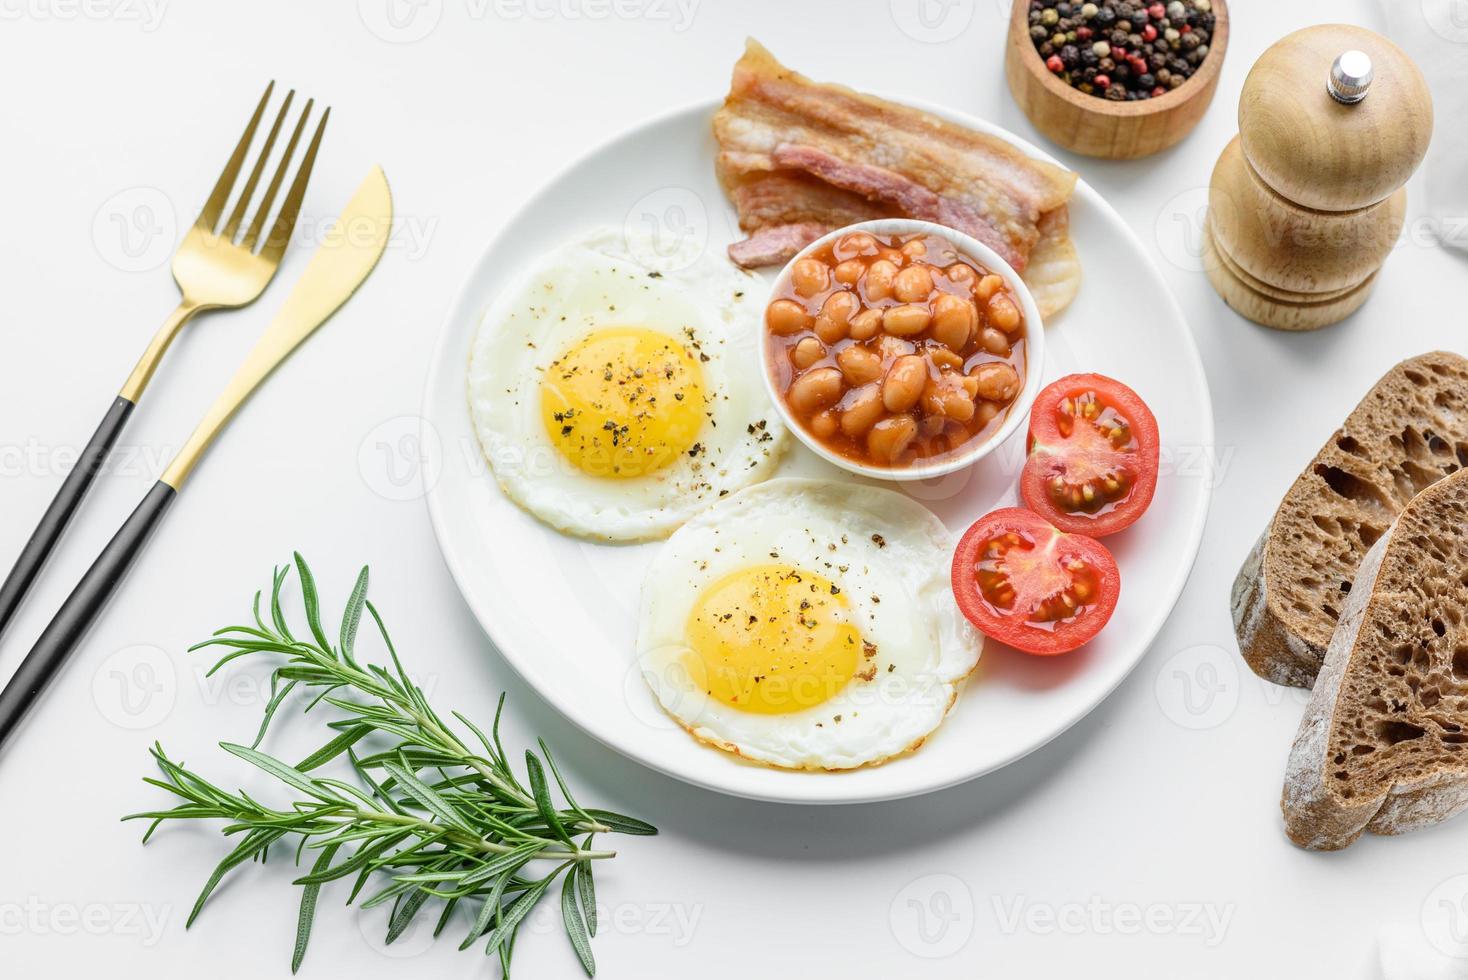 colazione all'inglese con uova fritte, pancetta, fagioli, pomodori, spezie ed erbe aromatiche foto